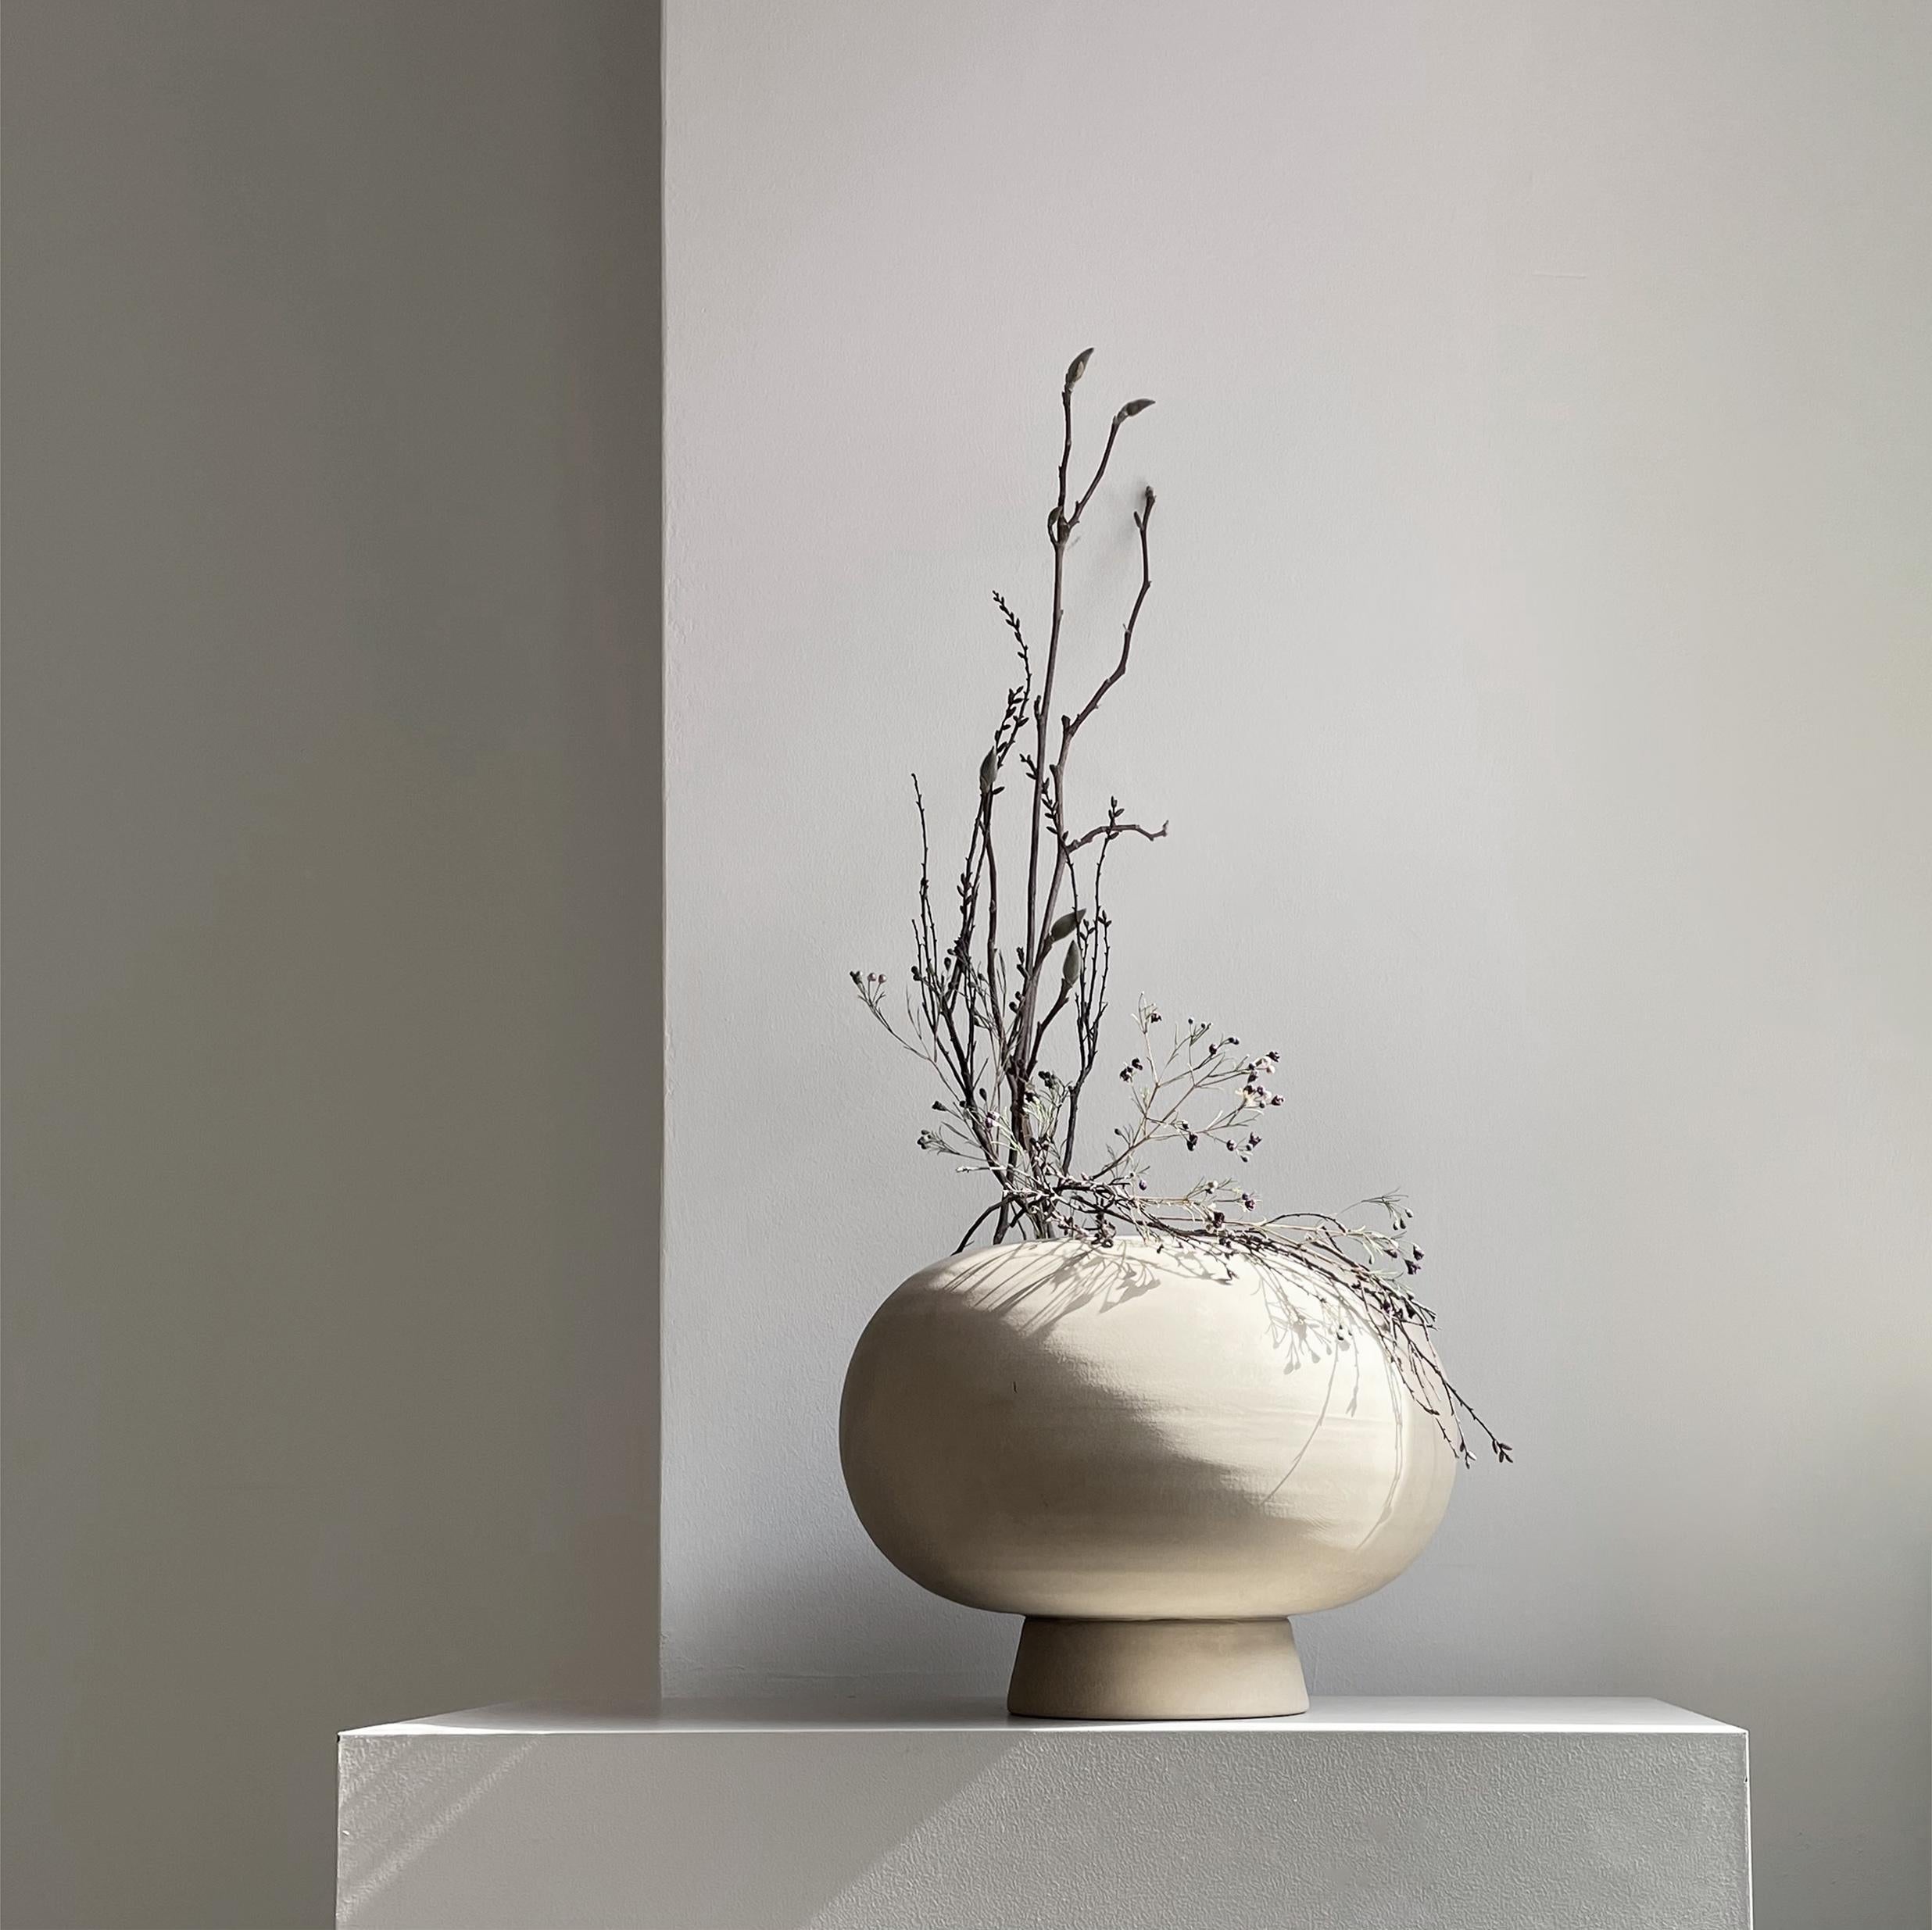 2er-Set Sand Kabin Vase Fat von 101 Copenhagen
Entworfen von Kristian Sofus Hansen & Tommy Hyldahl
Abmessungen: L35 / B35 / H25 CM
MATERIALIEN: Keramik

Kabin ist eine Kollektion von handgefertigten Keramikvasen, die von der japanischen